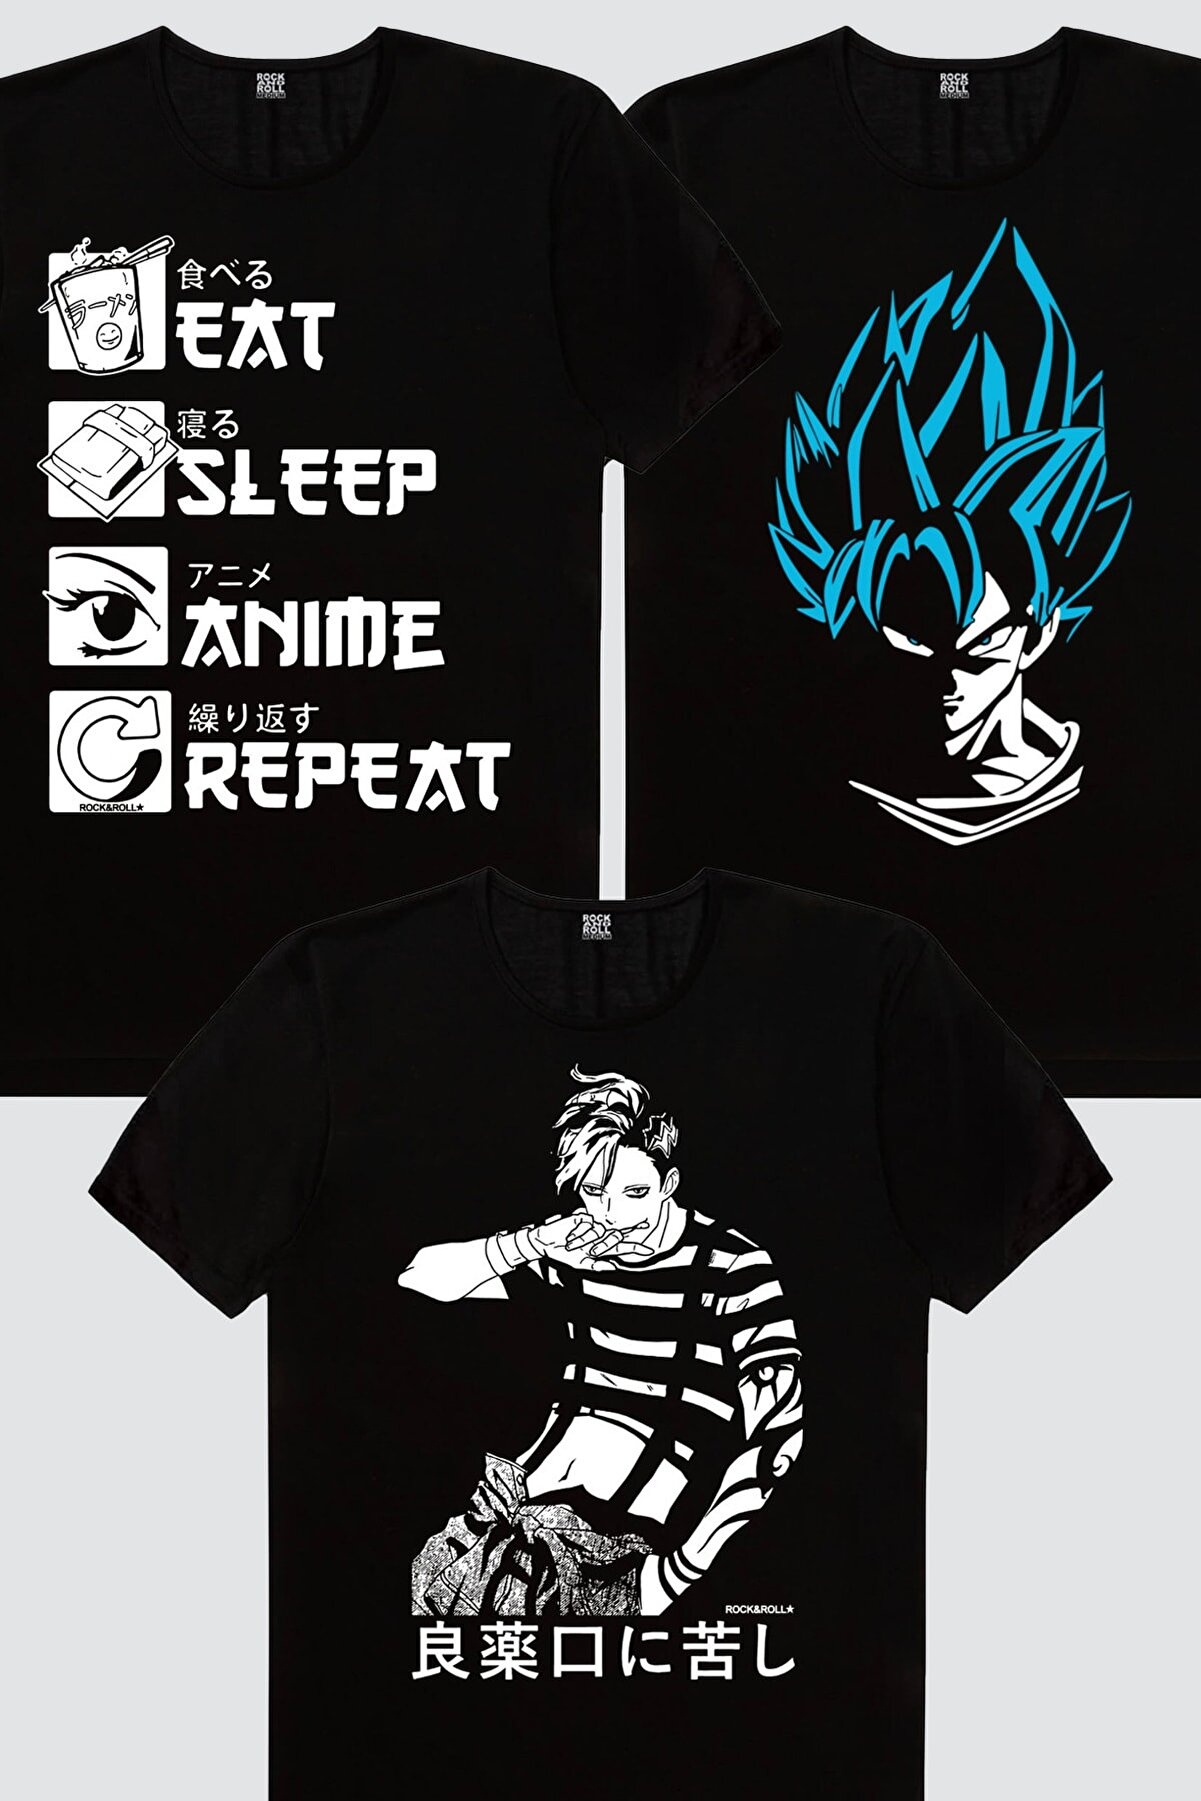 Manga Boy, Mavi Saçlı Kahraman, Hep Anime Kadın 3'lü Eko Paket T-shirt